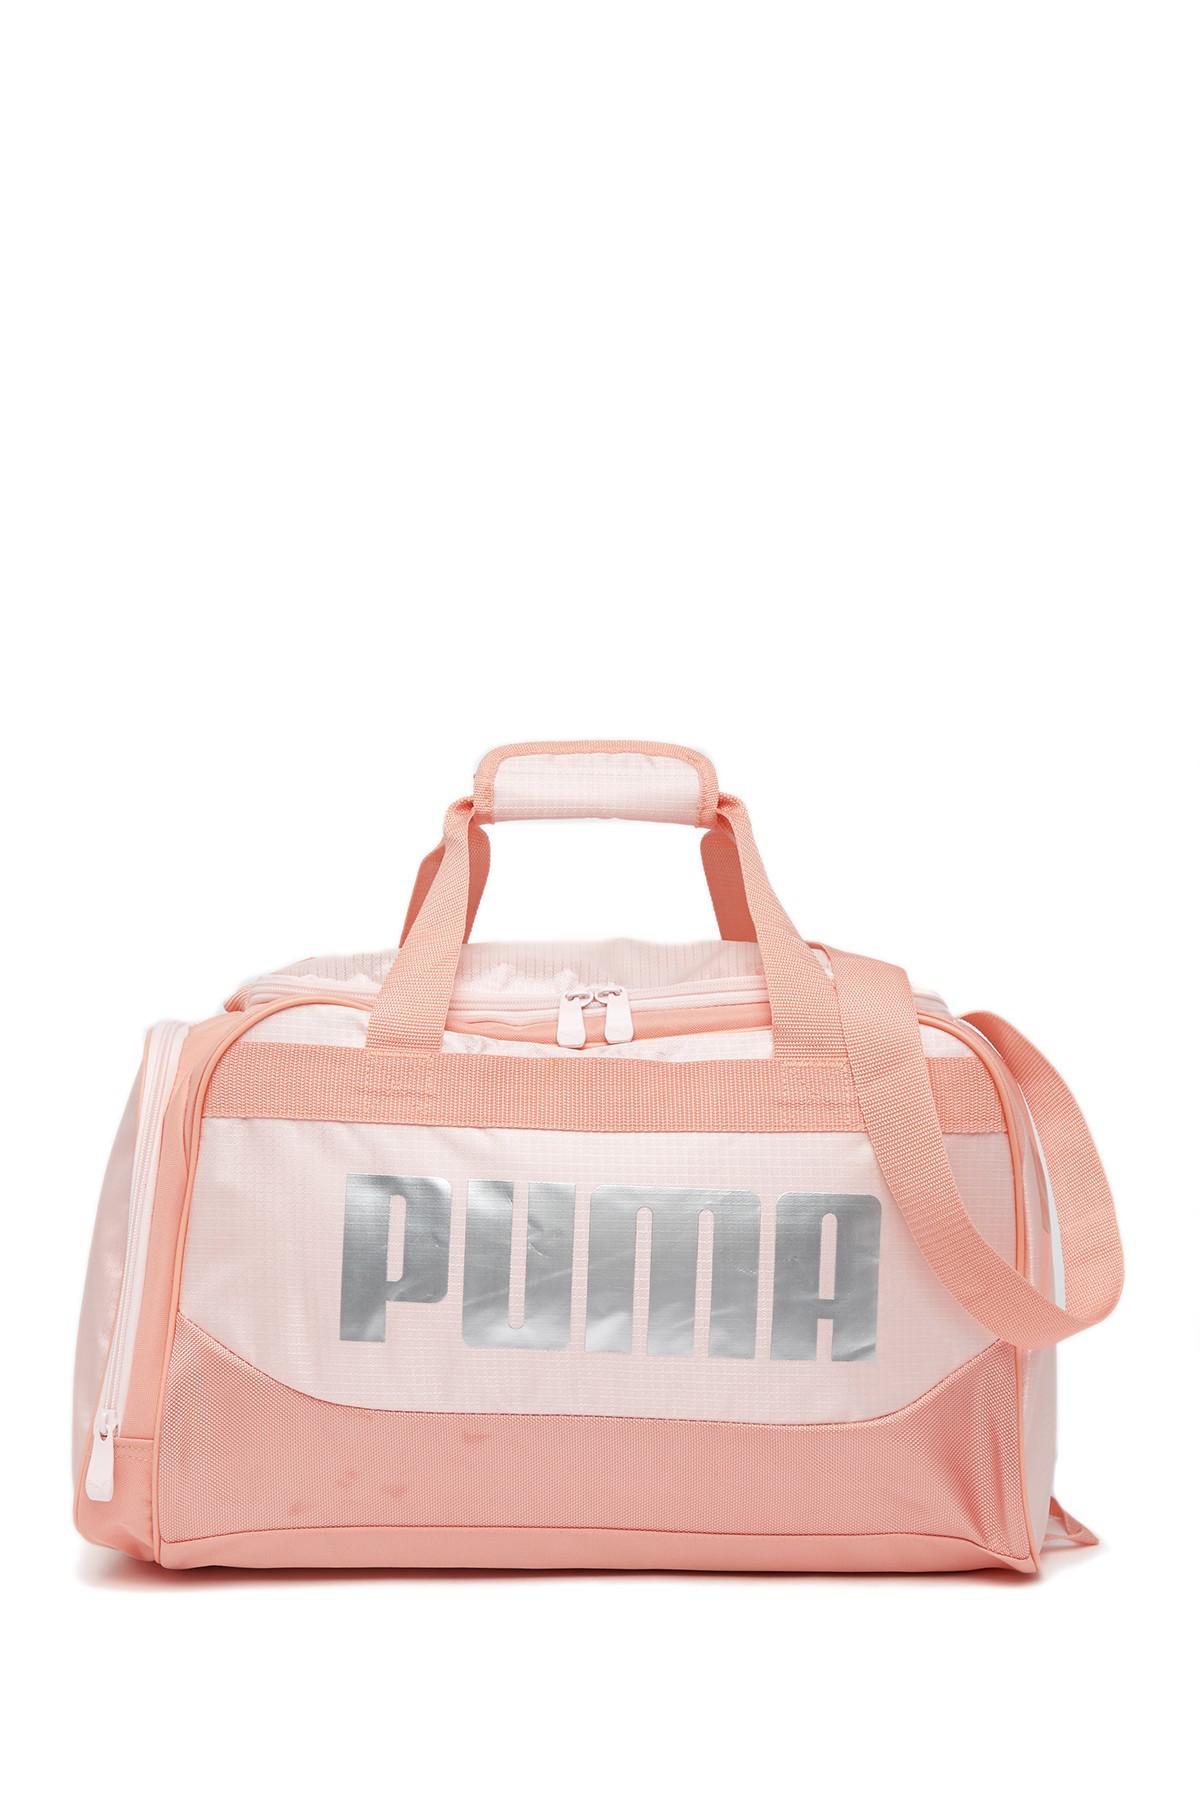 pink puma duffle bag